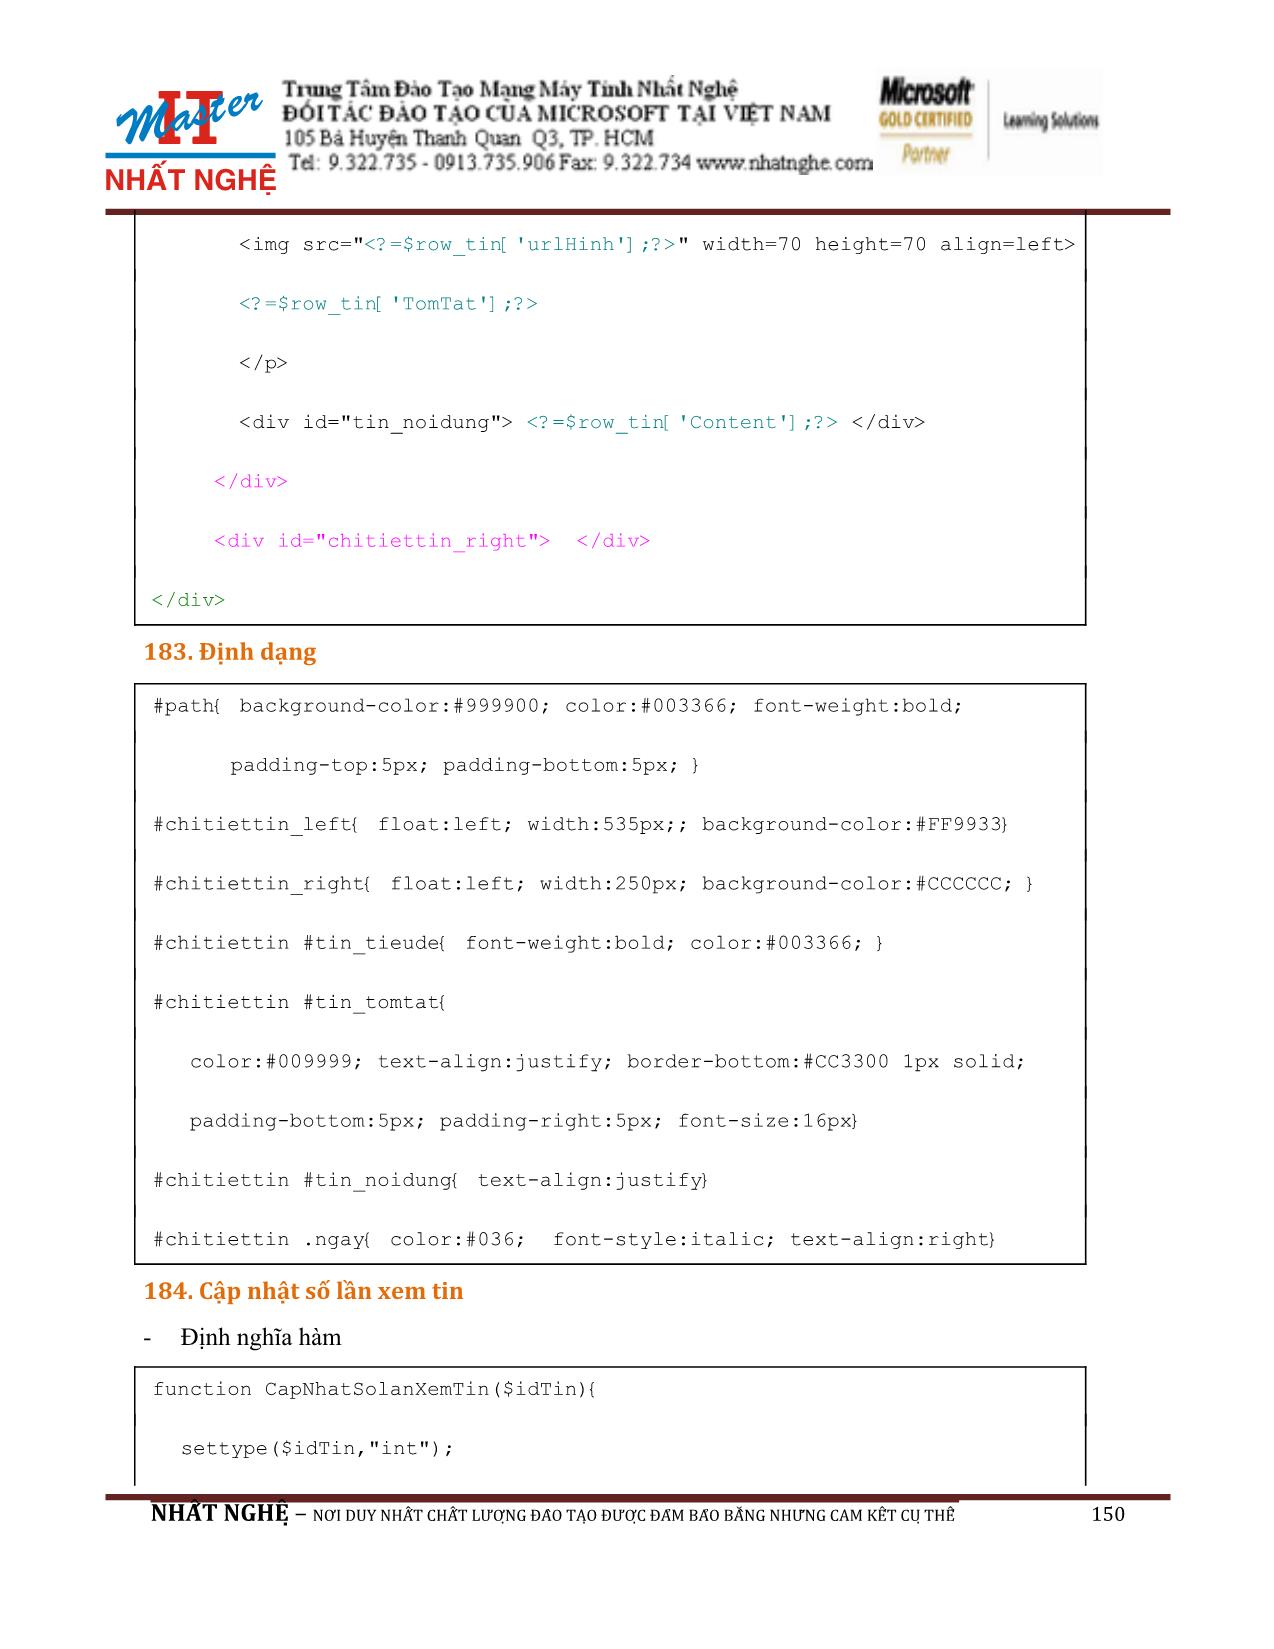 Giáo trình Hướng dẫn thiết kế Web PHP và MySQL (Phần 2) trang 2